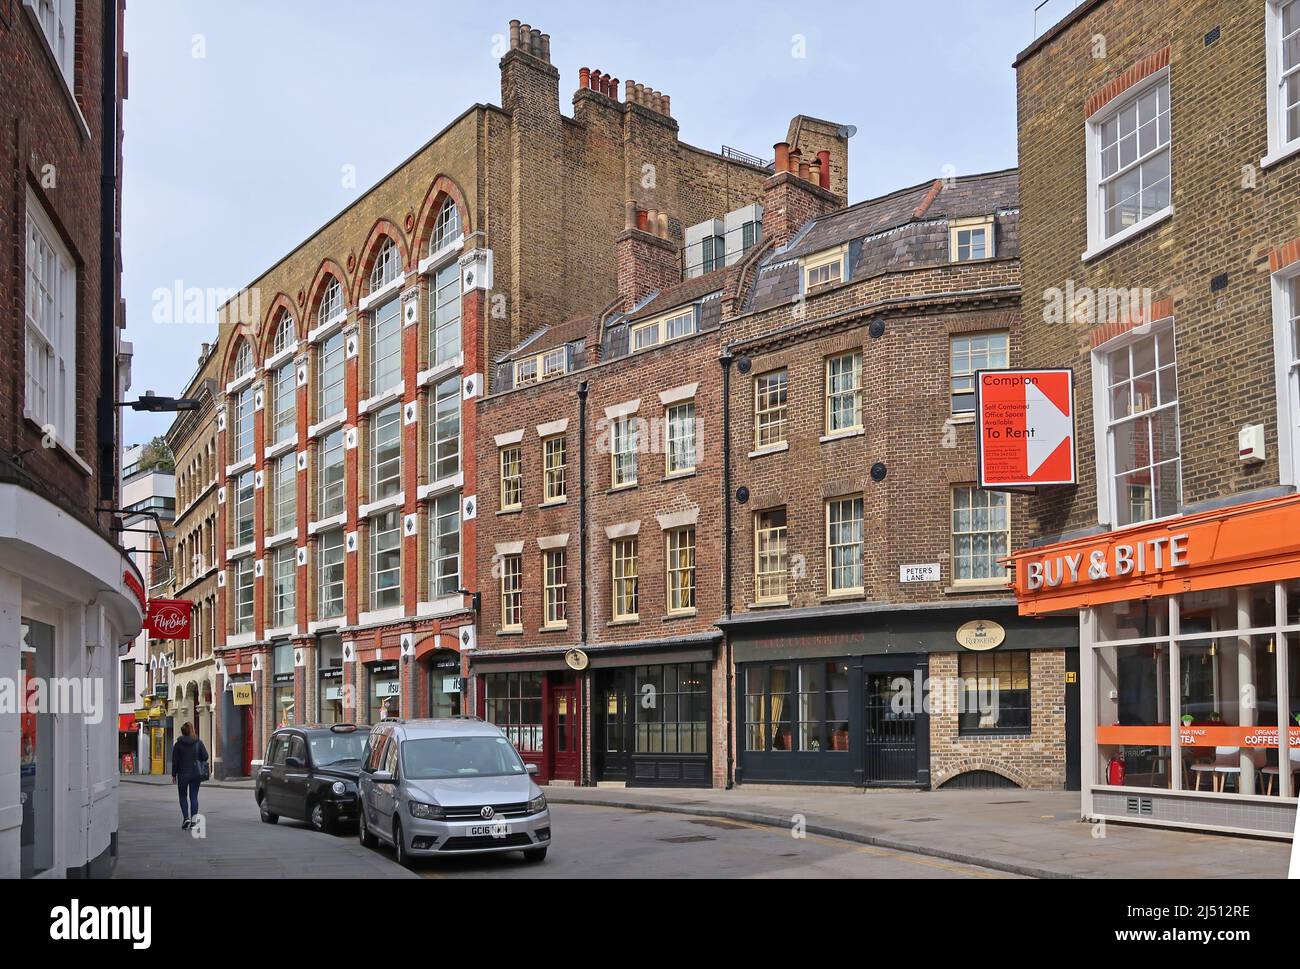 Cowcross Street in der City of London, Großbritannien. Enge, historische Straße und beliebter Drehort in der Nähe von Farringdon Station und Smithfield Markt. Stockfoto